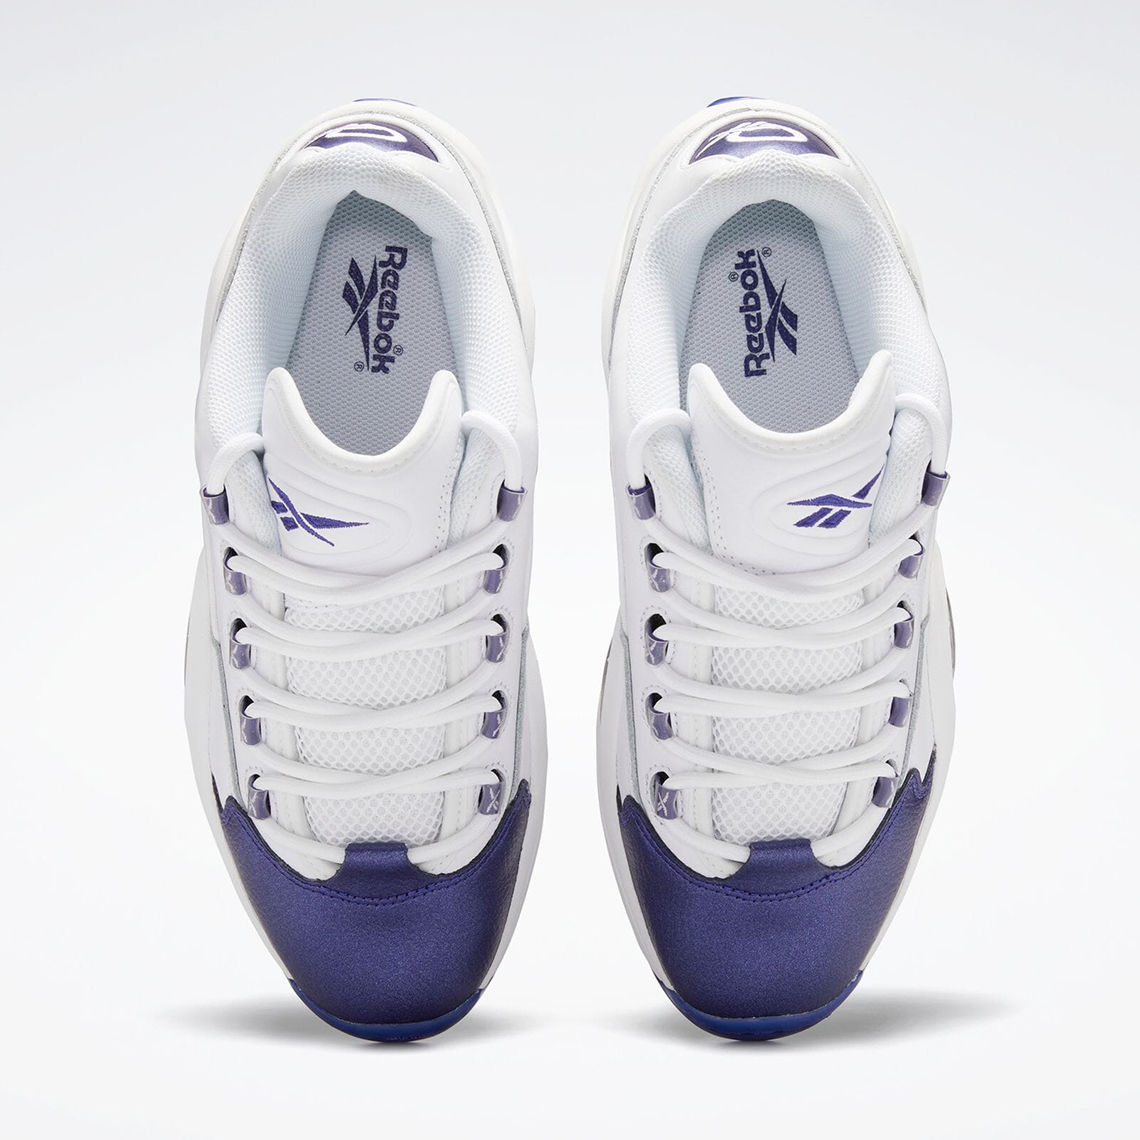 Skechers talla 36.5 Purple Toe Gy4577 Release Date 1